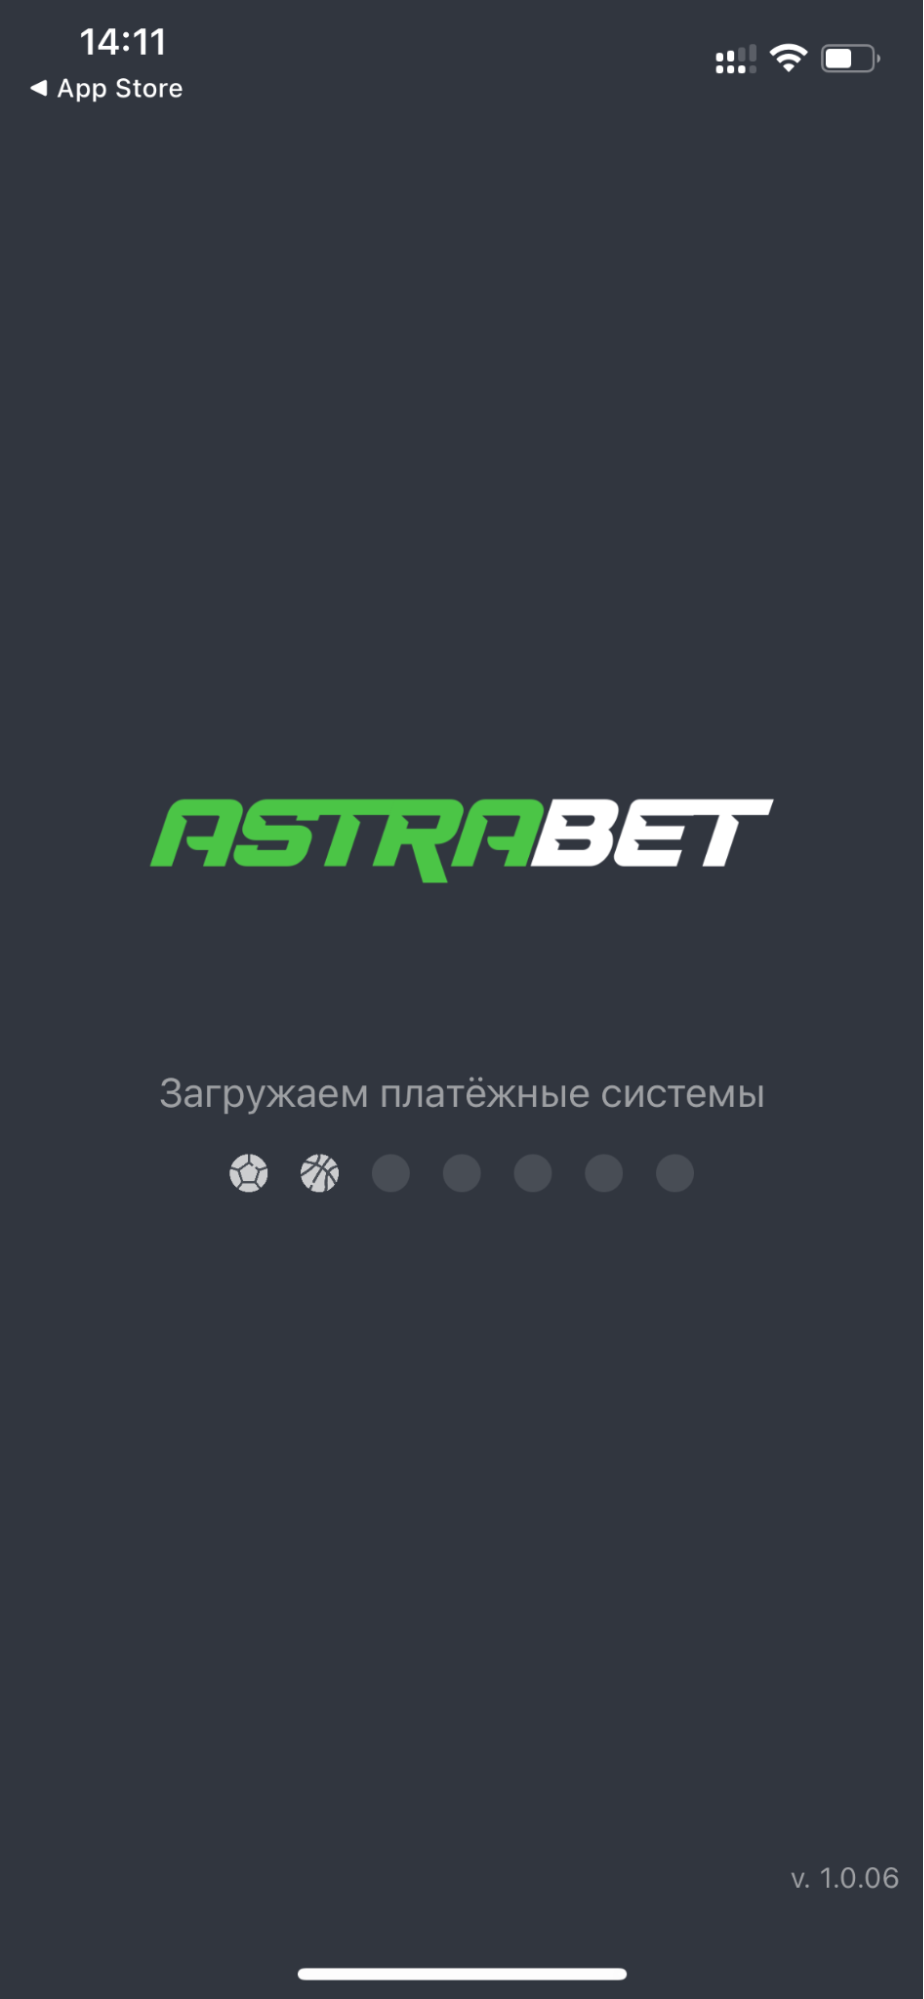 Начальный экран приложения БК Astrabet для iOS